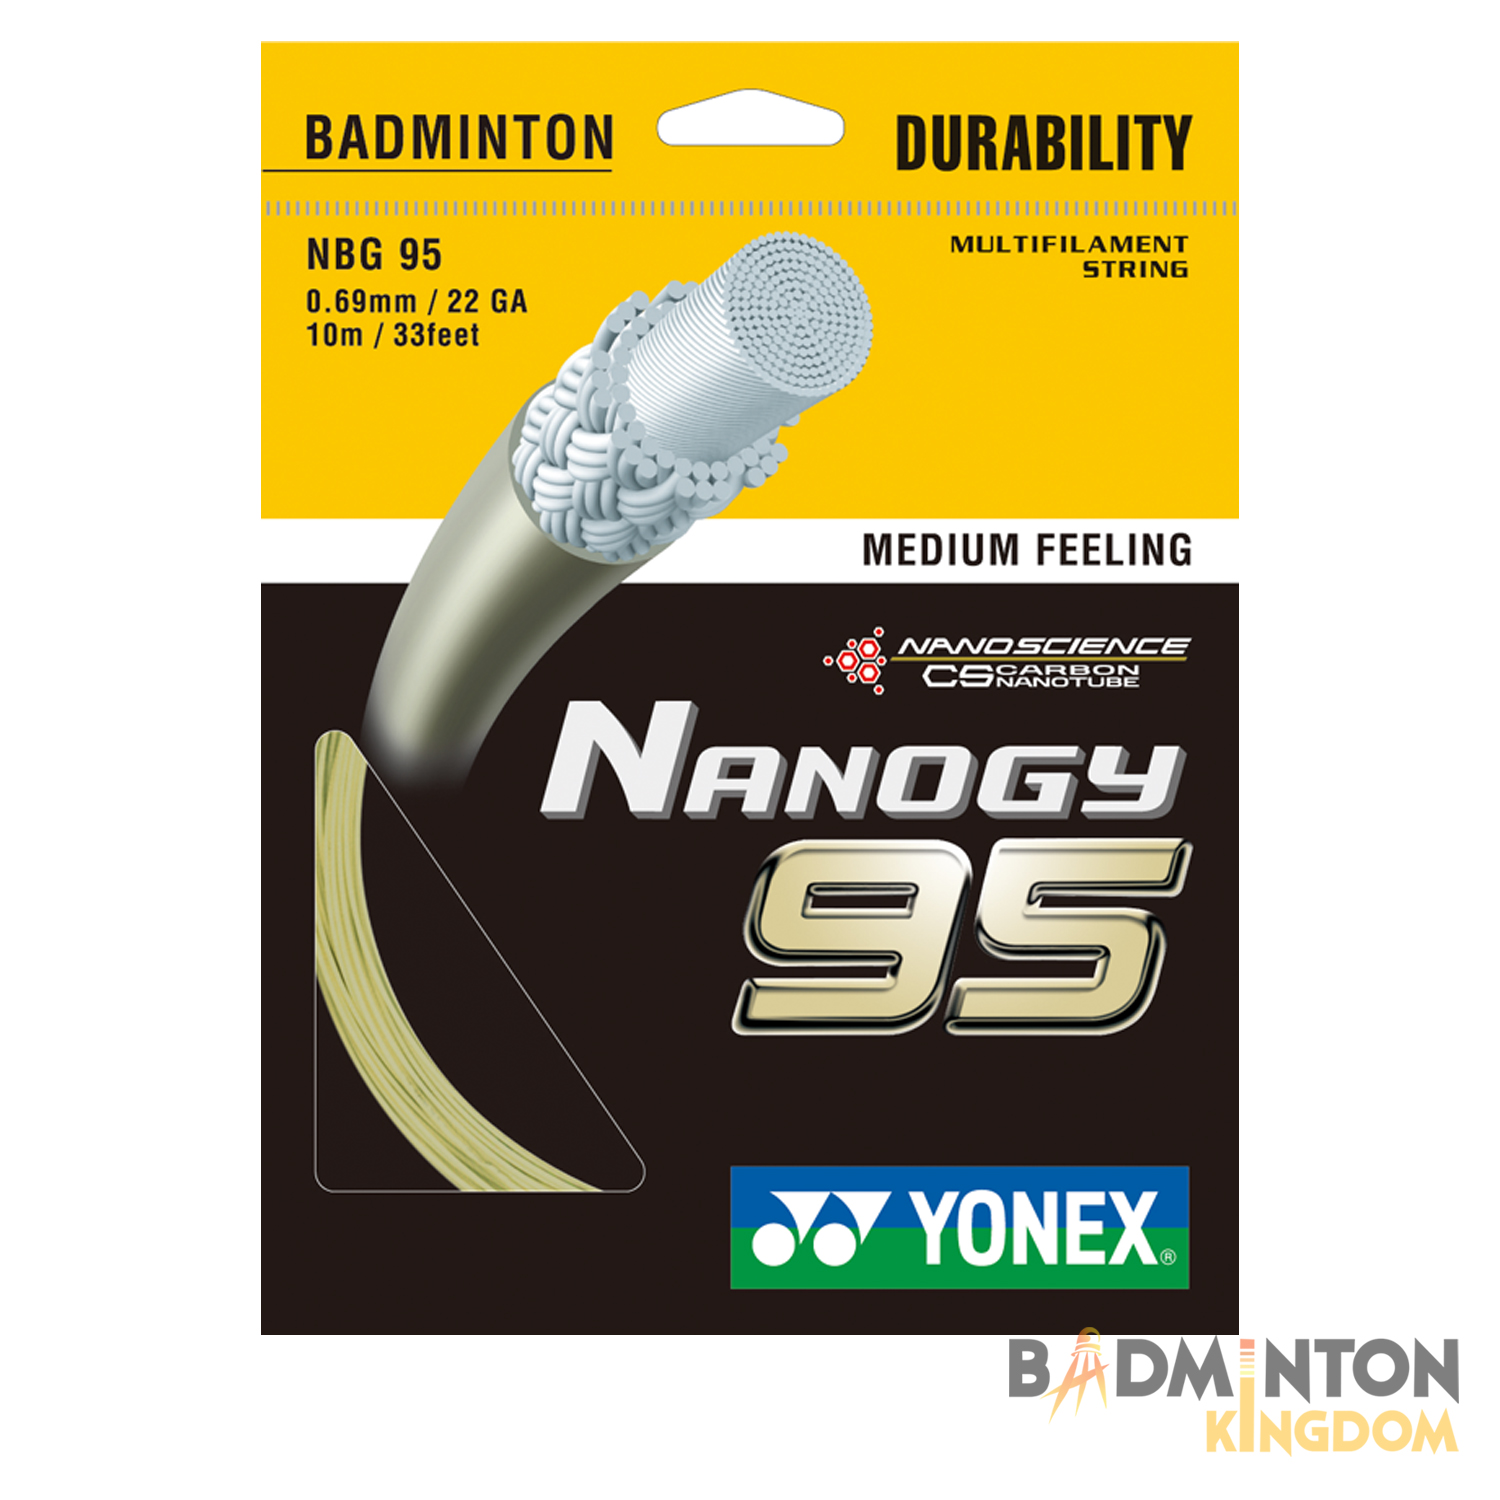 yonex-nanogy-95-badminton-string